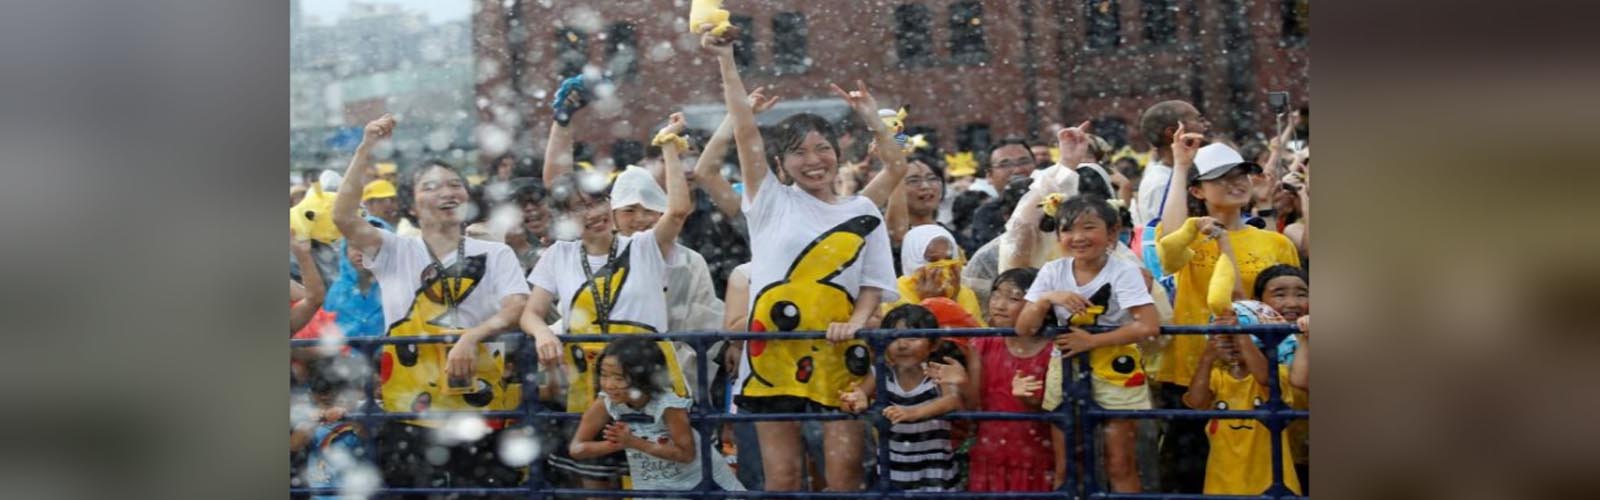 Pokemon Go fans join giant Pikachus at Yokohama festival